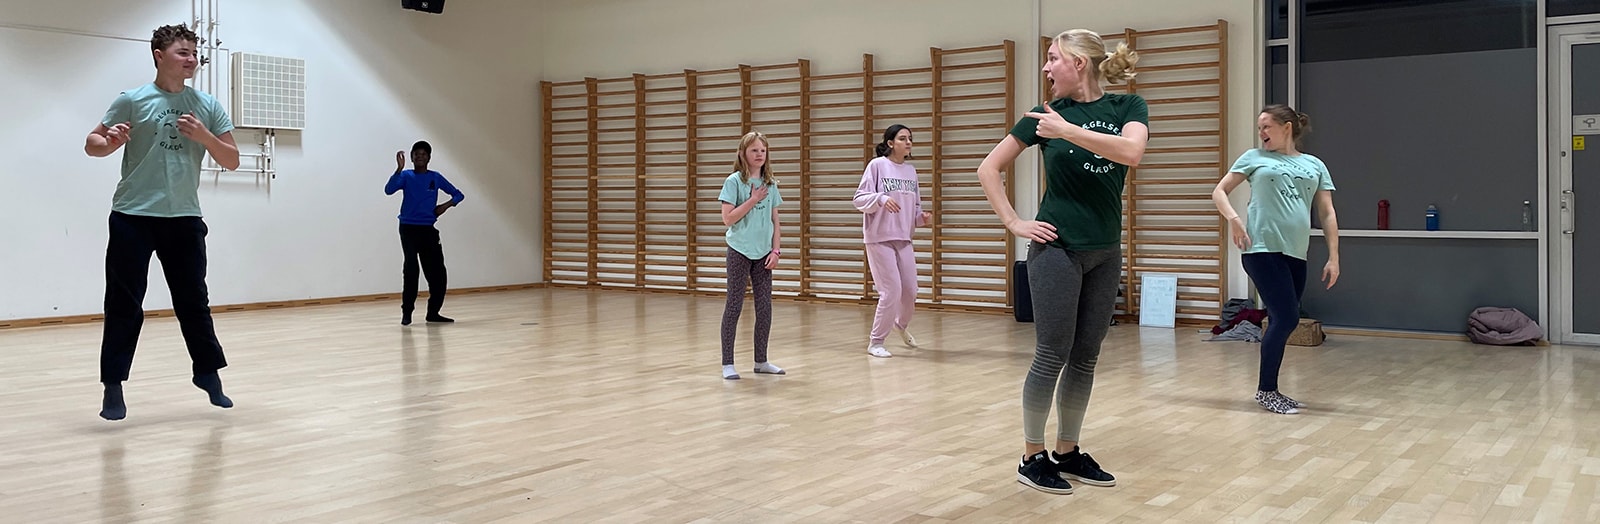 Foreningen Bevægelsesglæde i Aarhus tilbyder danse- og gymnastikhold for børn, unge og voksne med udviklingshandicap og generelle indlæringsvanskeligheder.